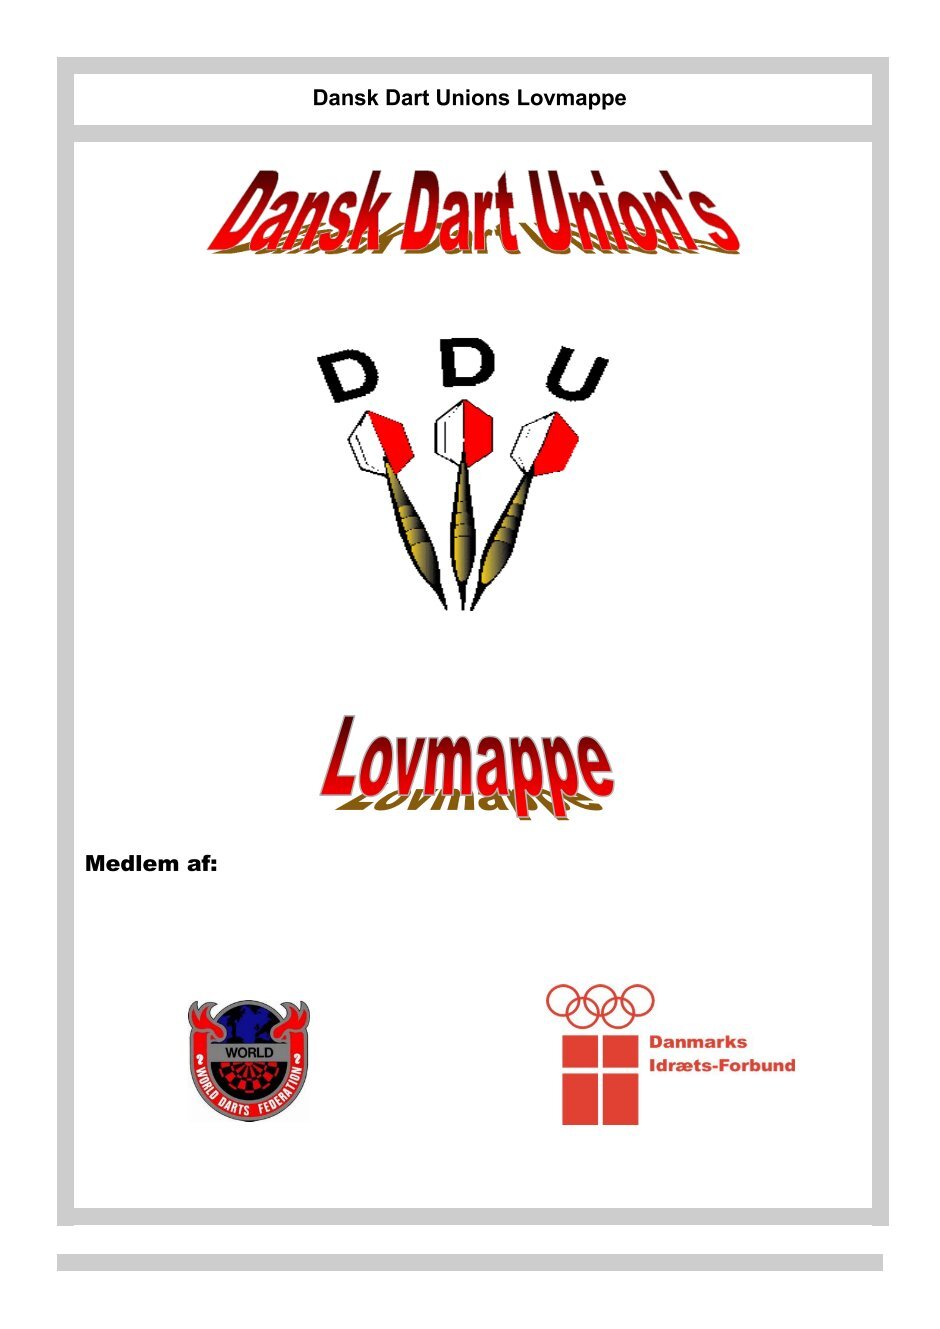 7 Magazines from DART.DDU.DK